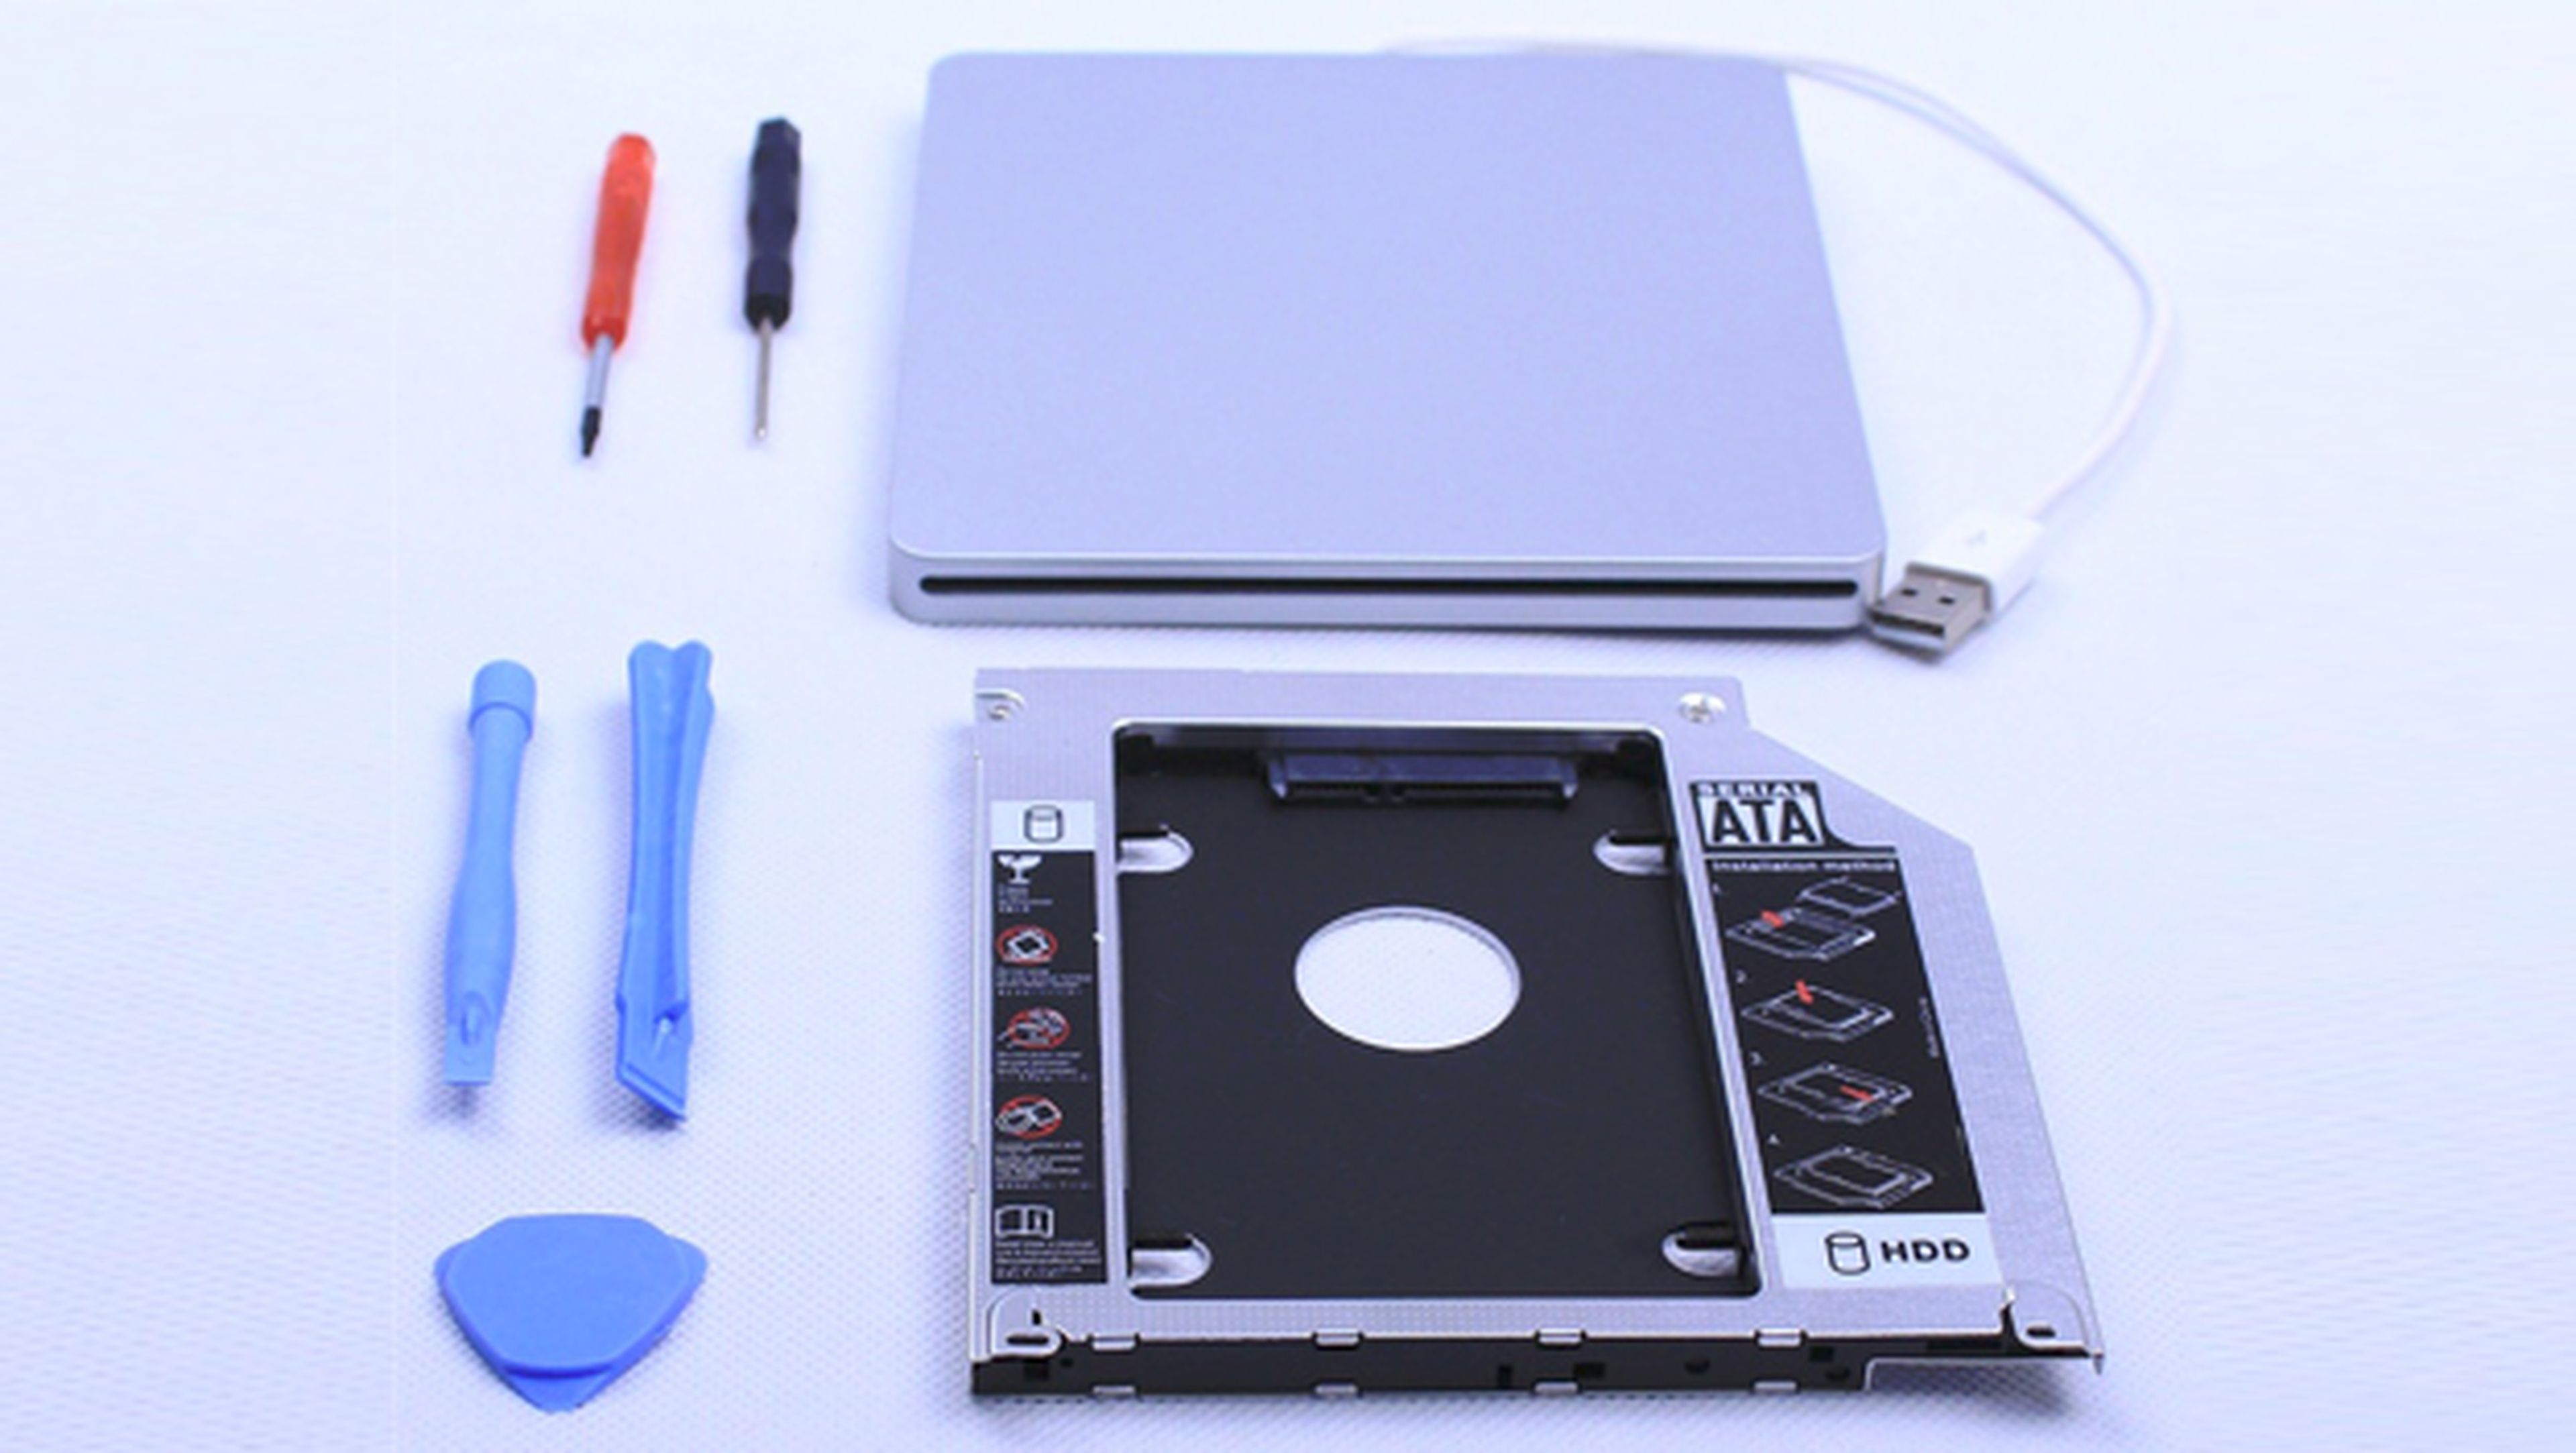 Kit para Macbook y Macbook Pro con Superdrive